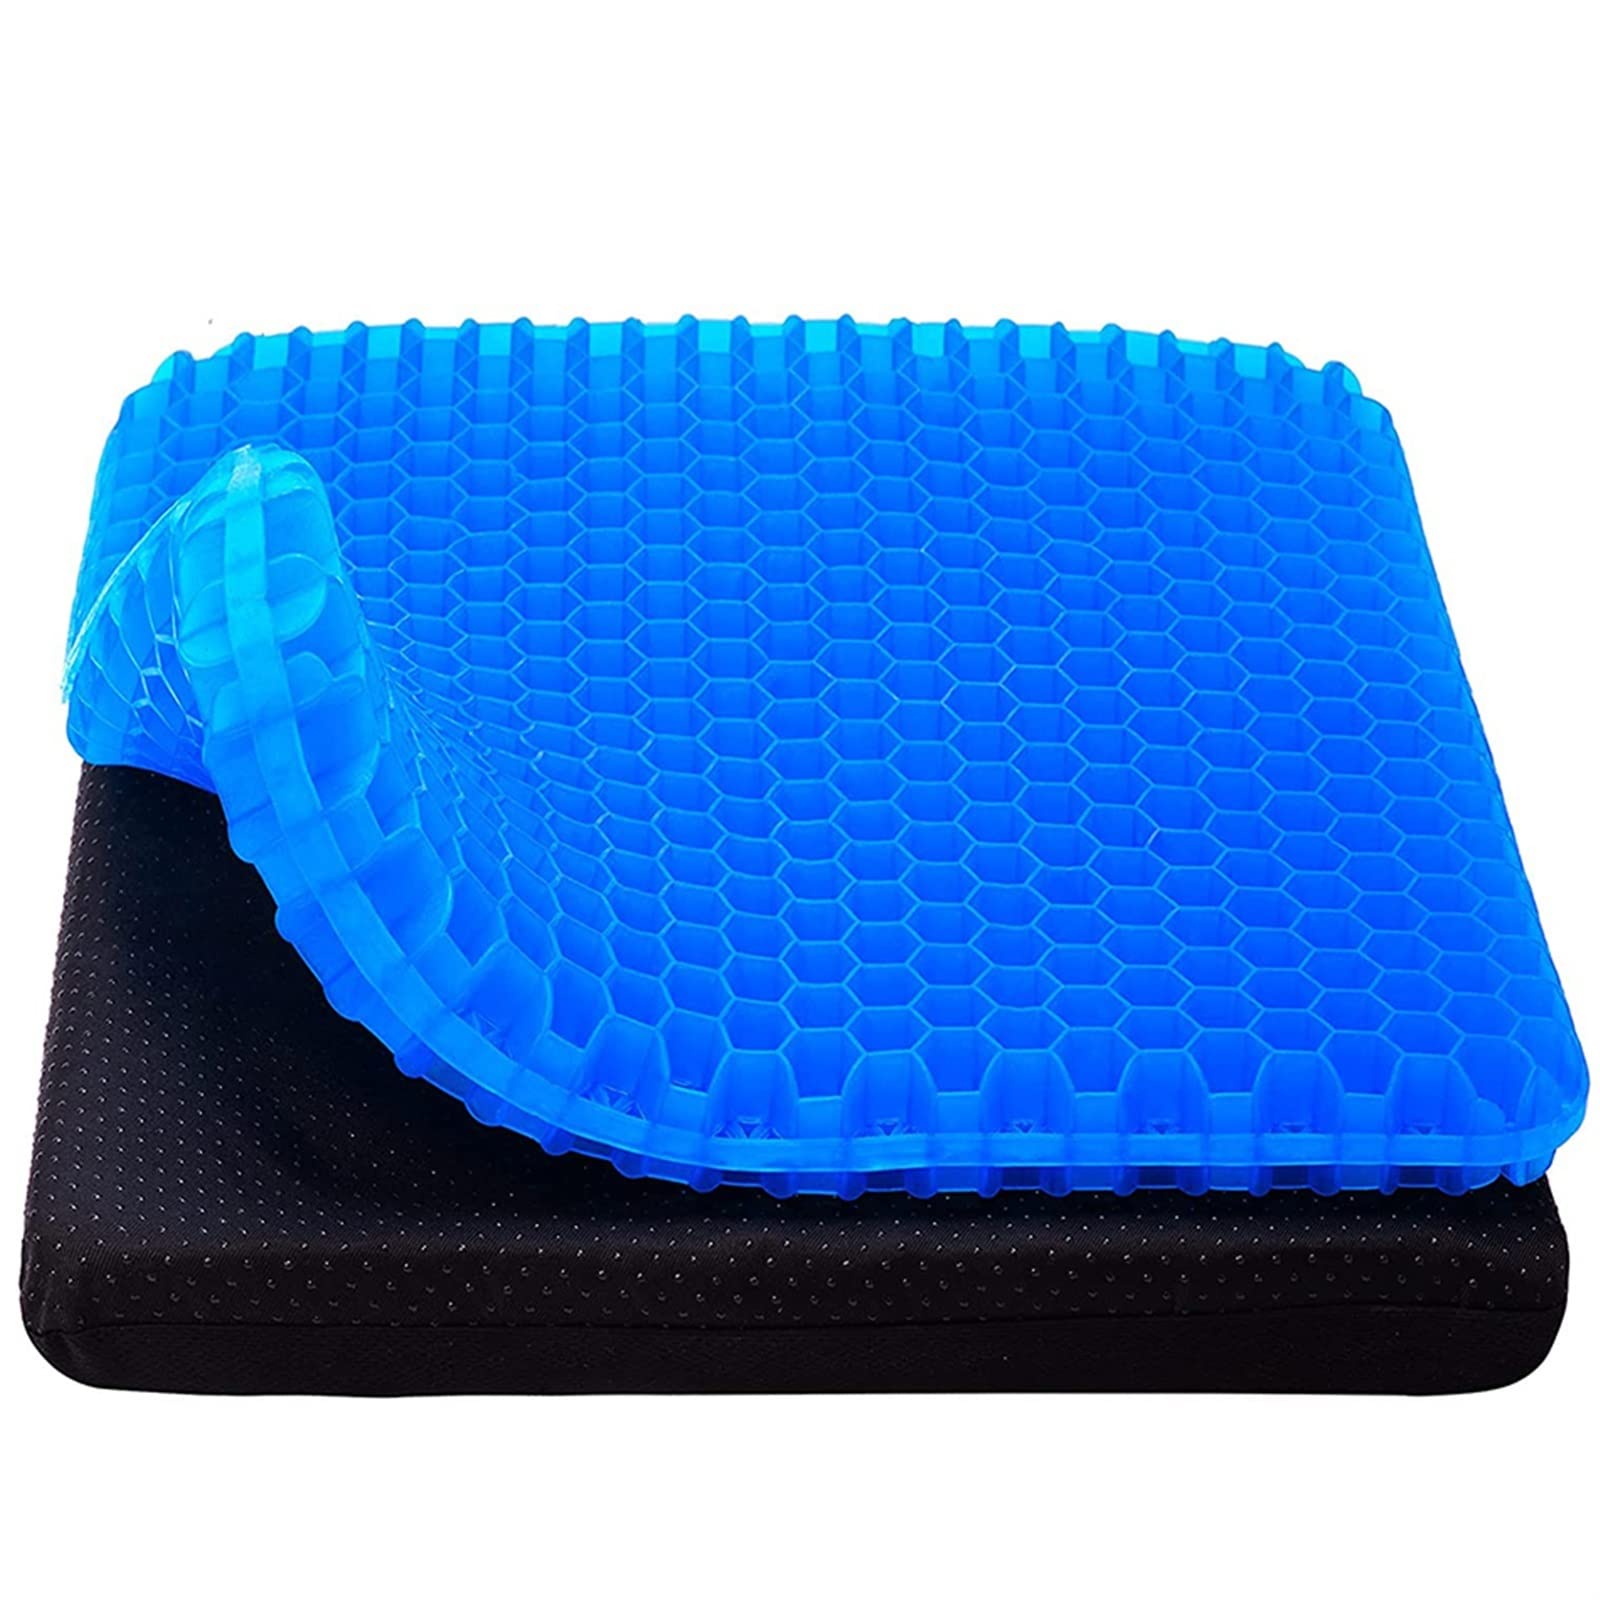 送料無料JINBAR Pillowinserts Gel Seat Cushion Breathable Honeycomb Design for Pressure Relief Back Tailbone Pain - Home O